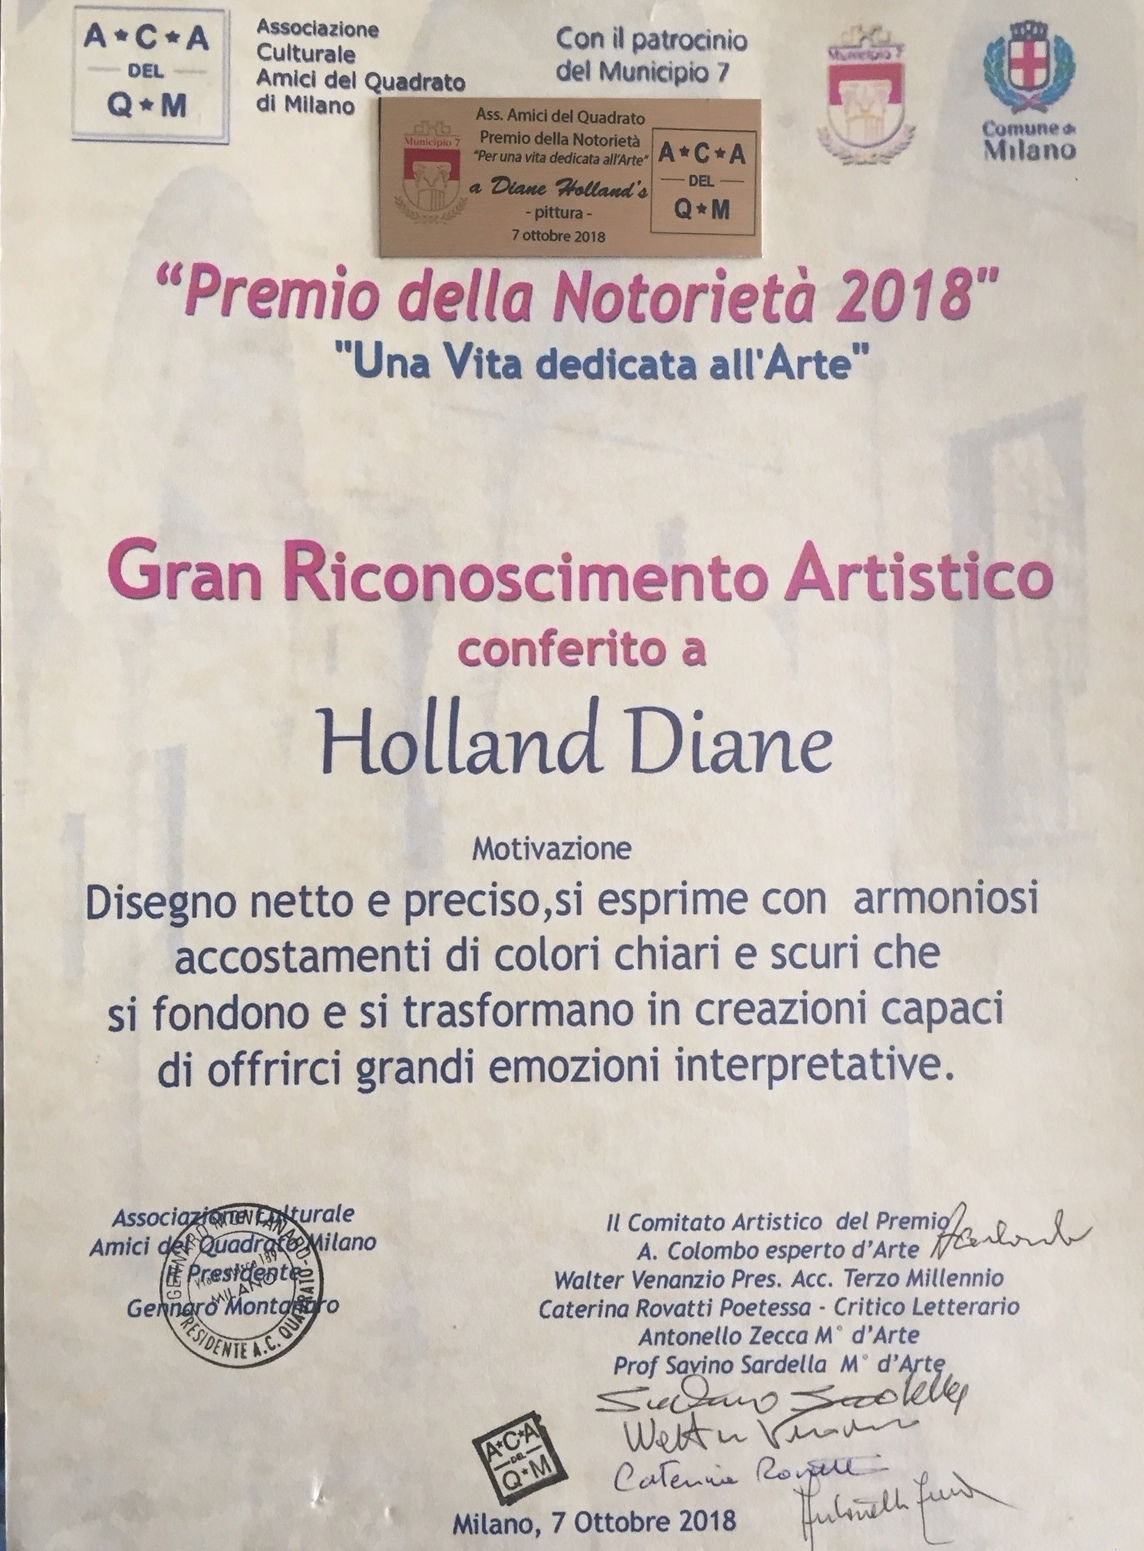 Associazione Culturale Amici del Quadrato di Milano: Gran Riconoscimento Artistico conferito a Diane Holland